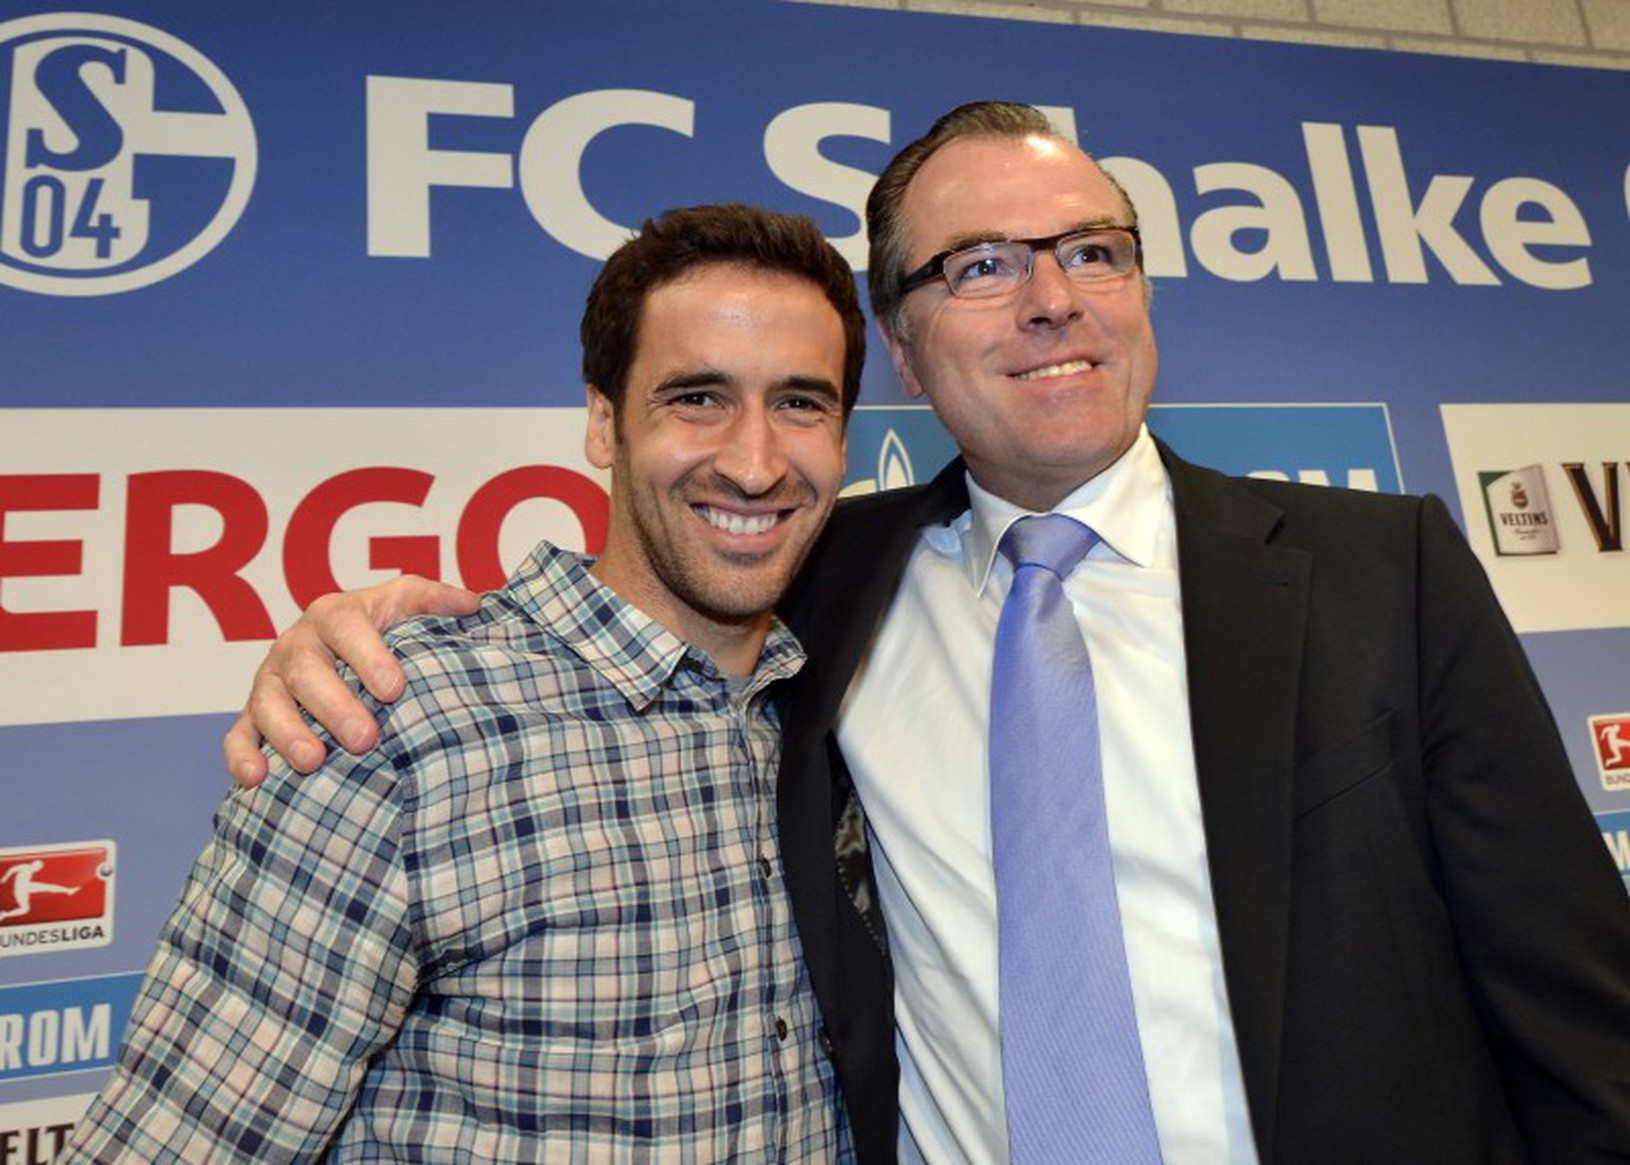 Raúl a prezident Schalke